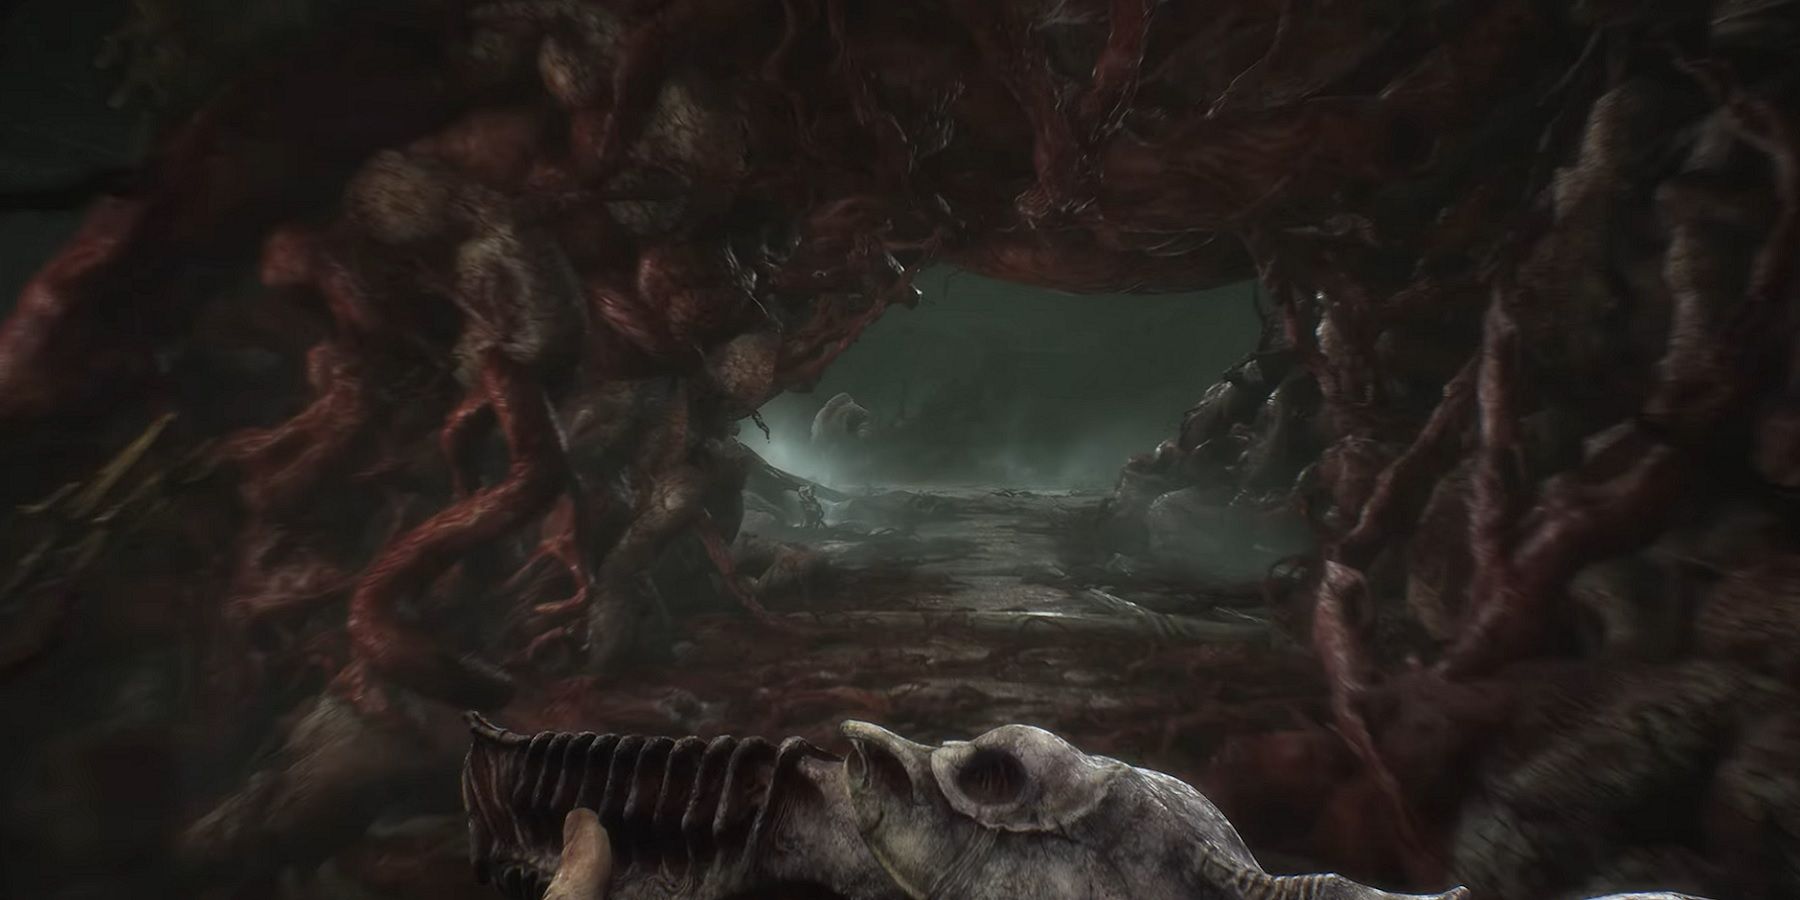 Изображение от Scorn, показывающее, как игрок с оружием входит в туннель боди-хоррора.